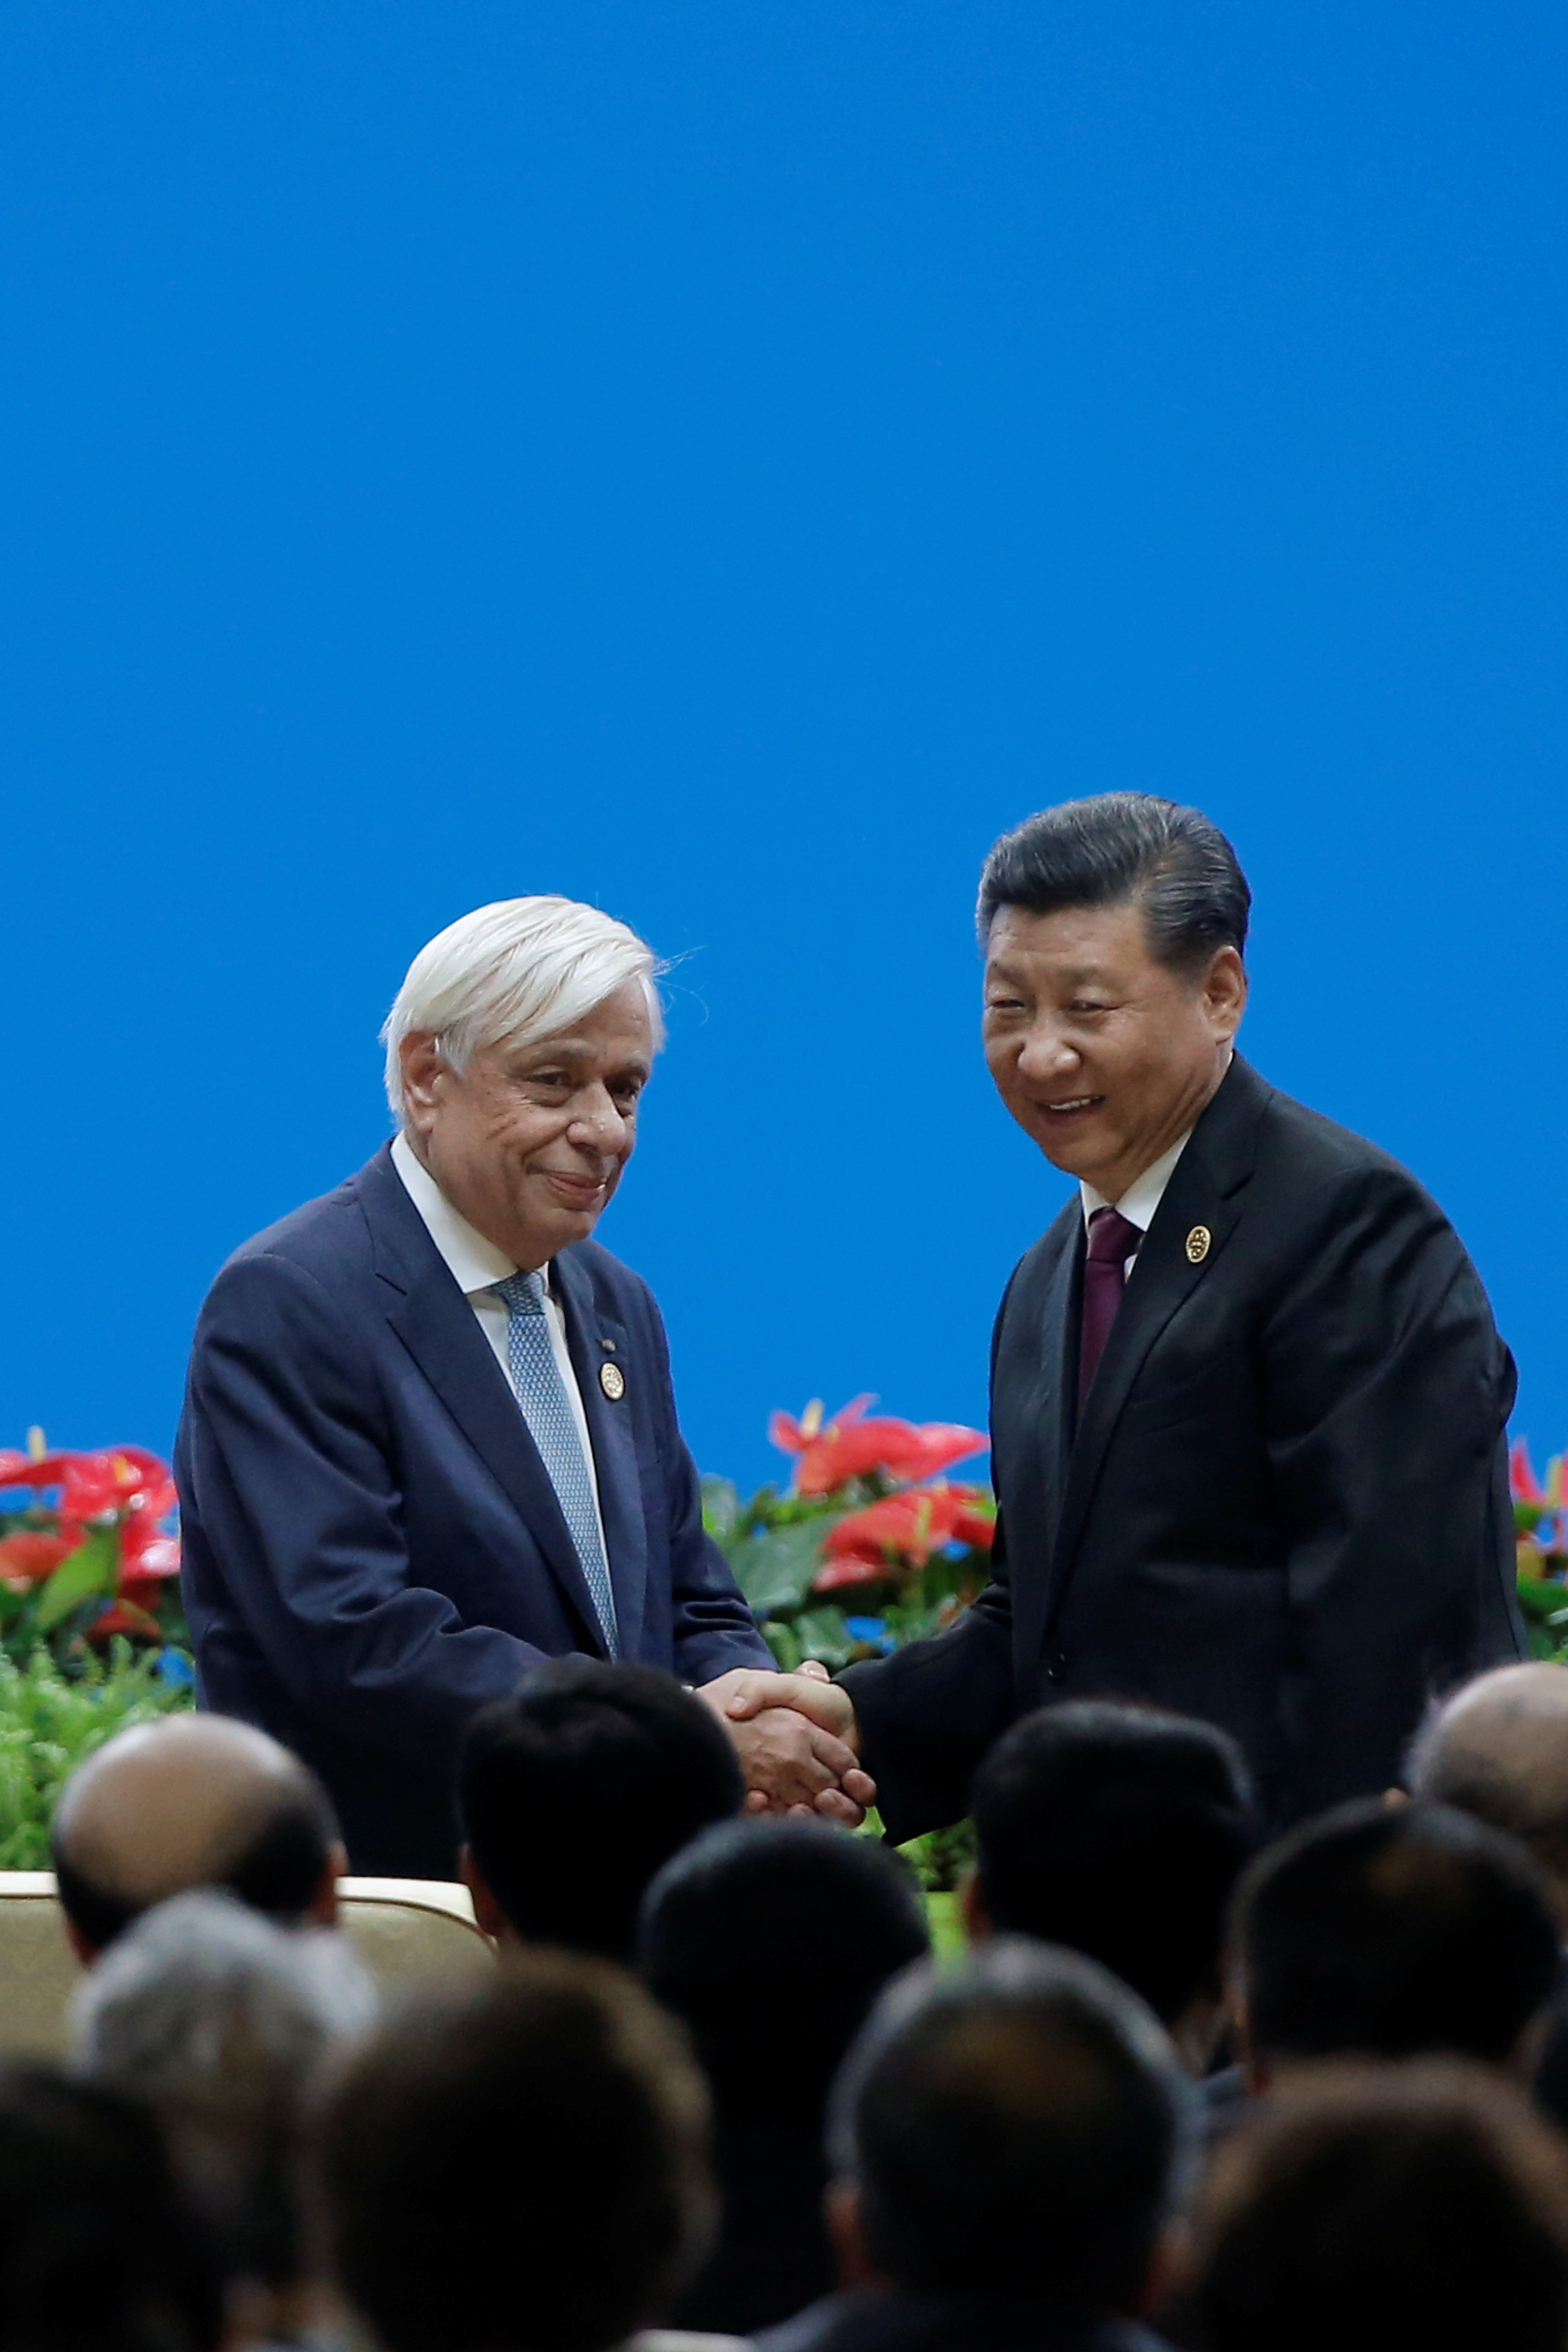 الرئيس الصيني شي جين بينغ والرئيس اليوناني بروكوبس بافلوبولوس